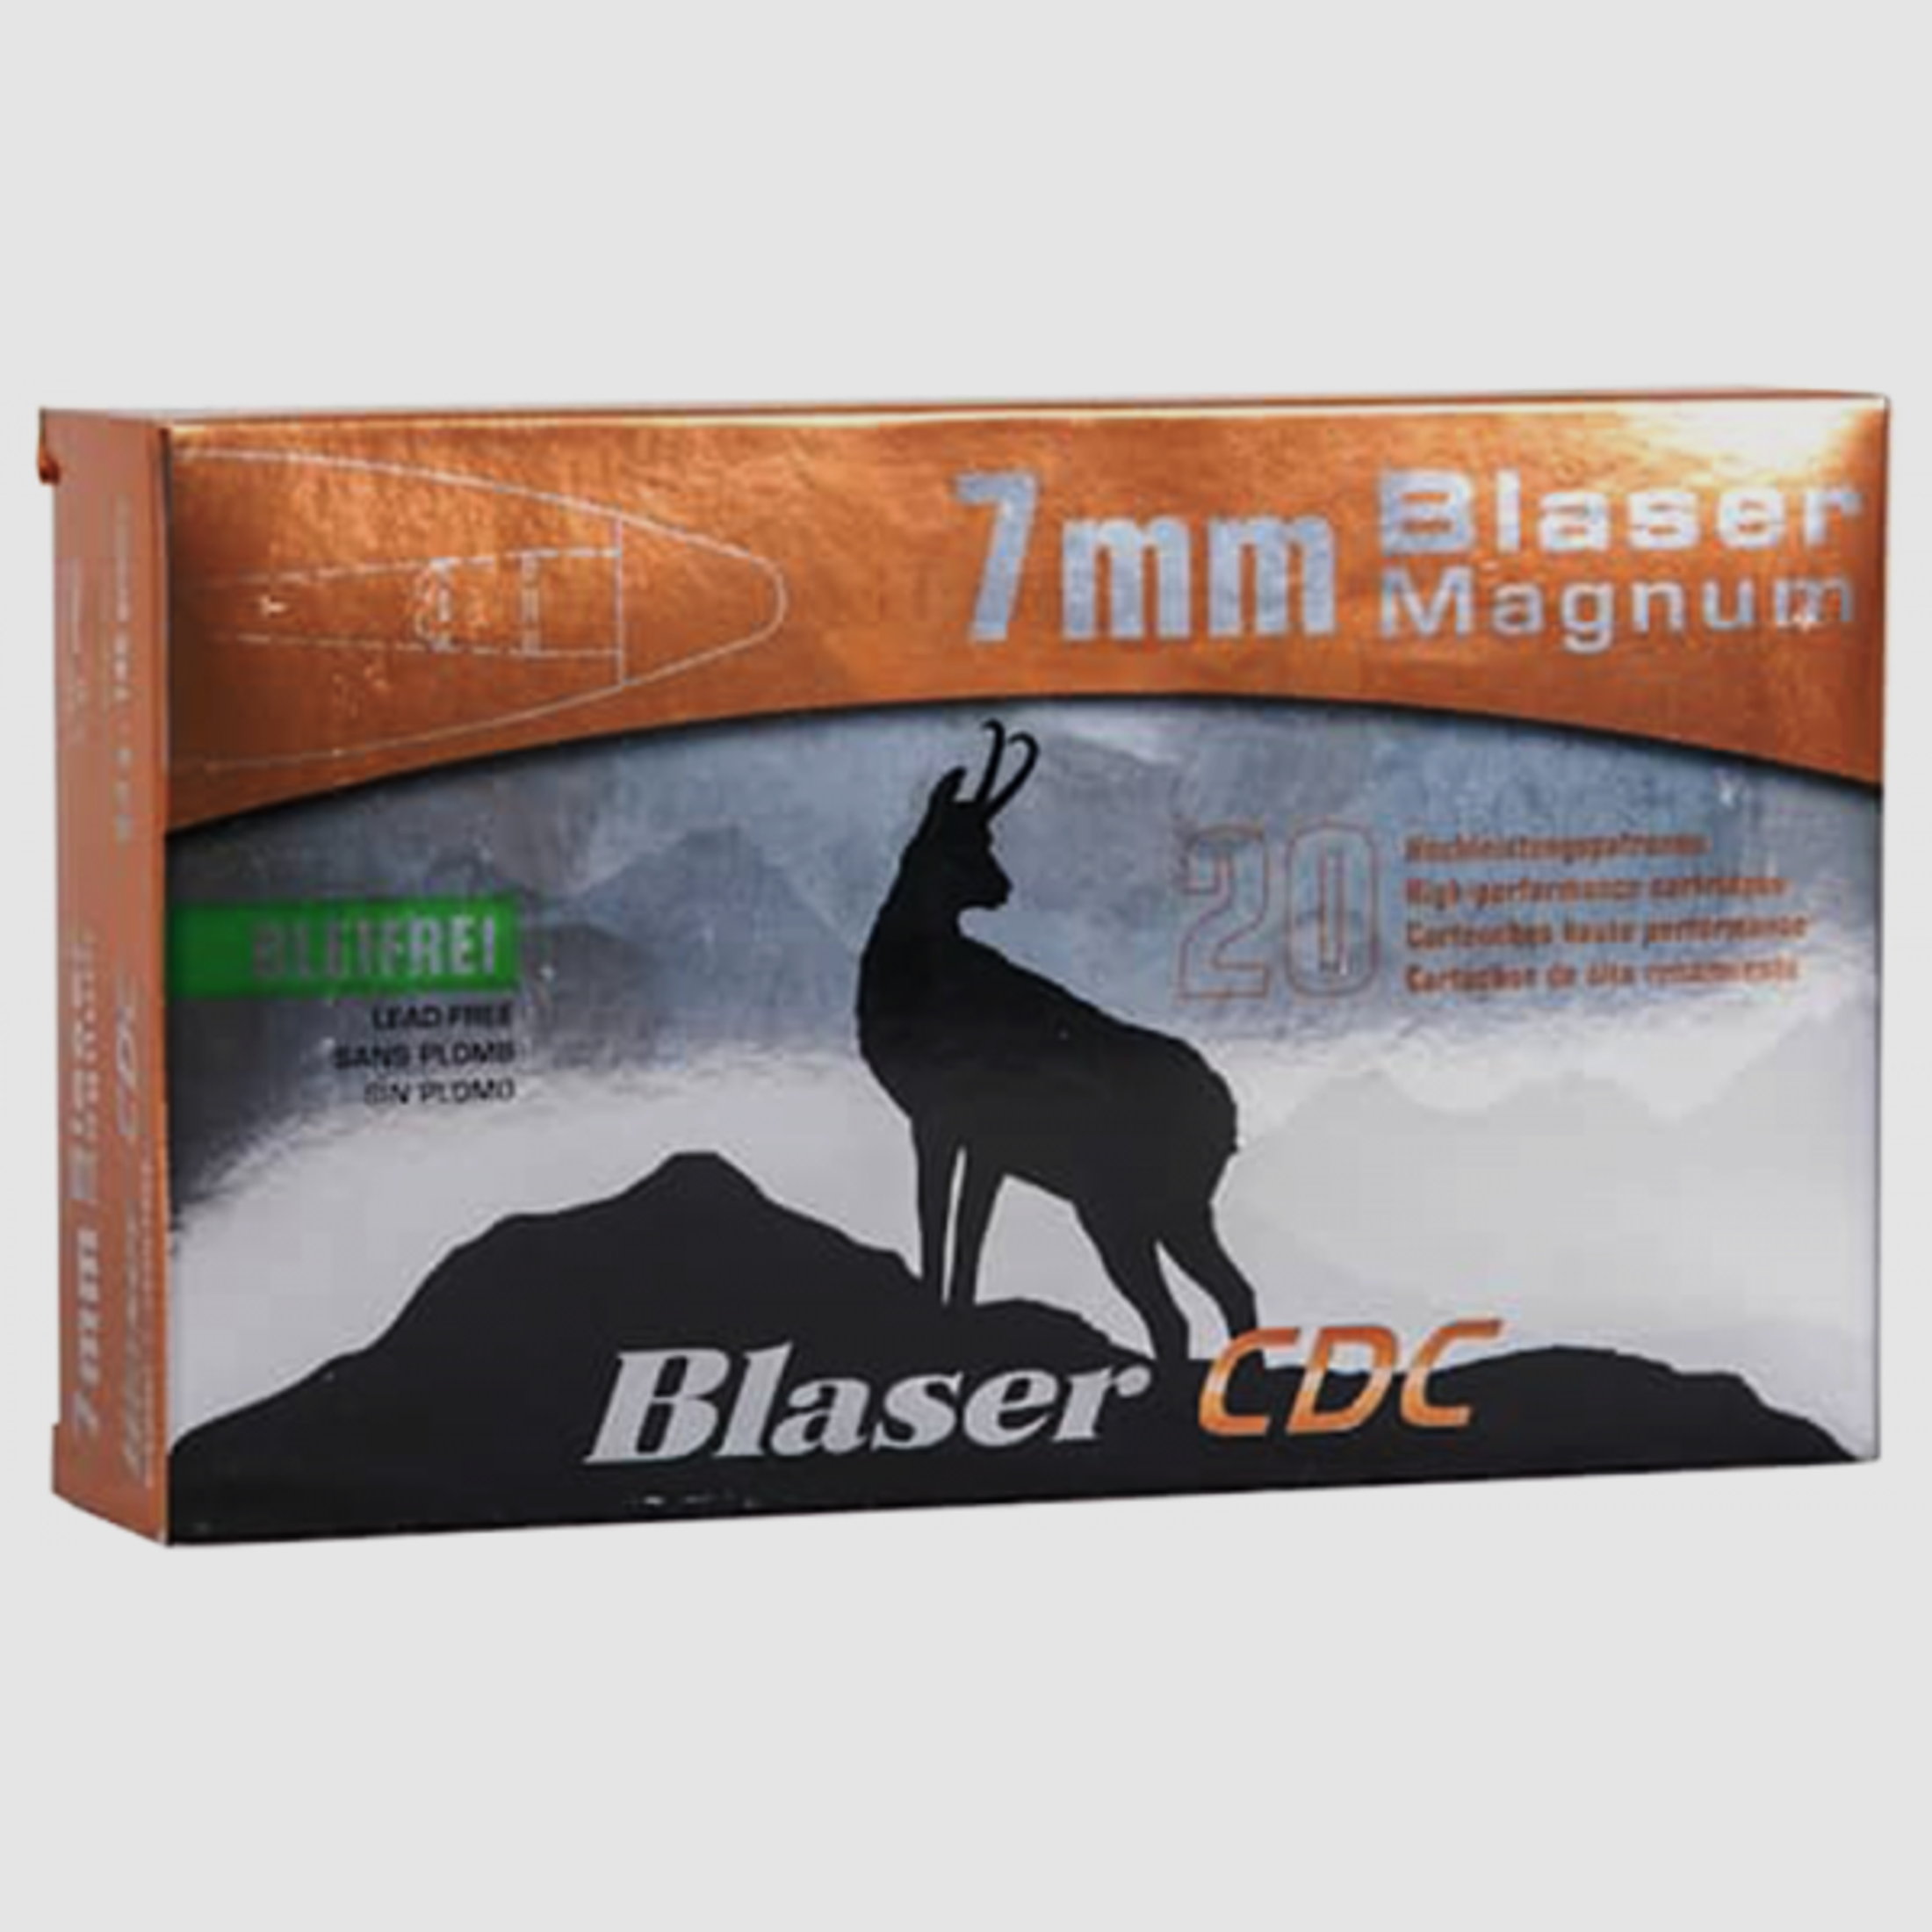 Blaser Magnum 7mm Blaser Mag Blaser CDC 145 grs Büchsenpatronen